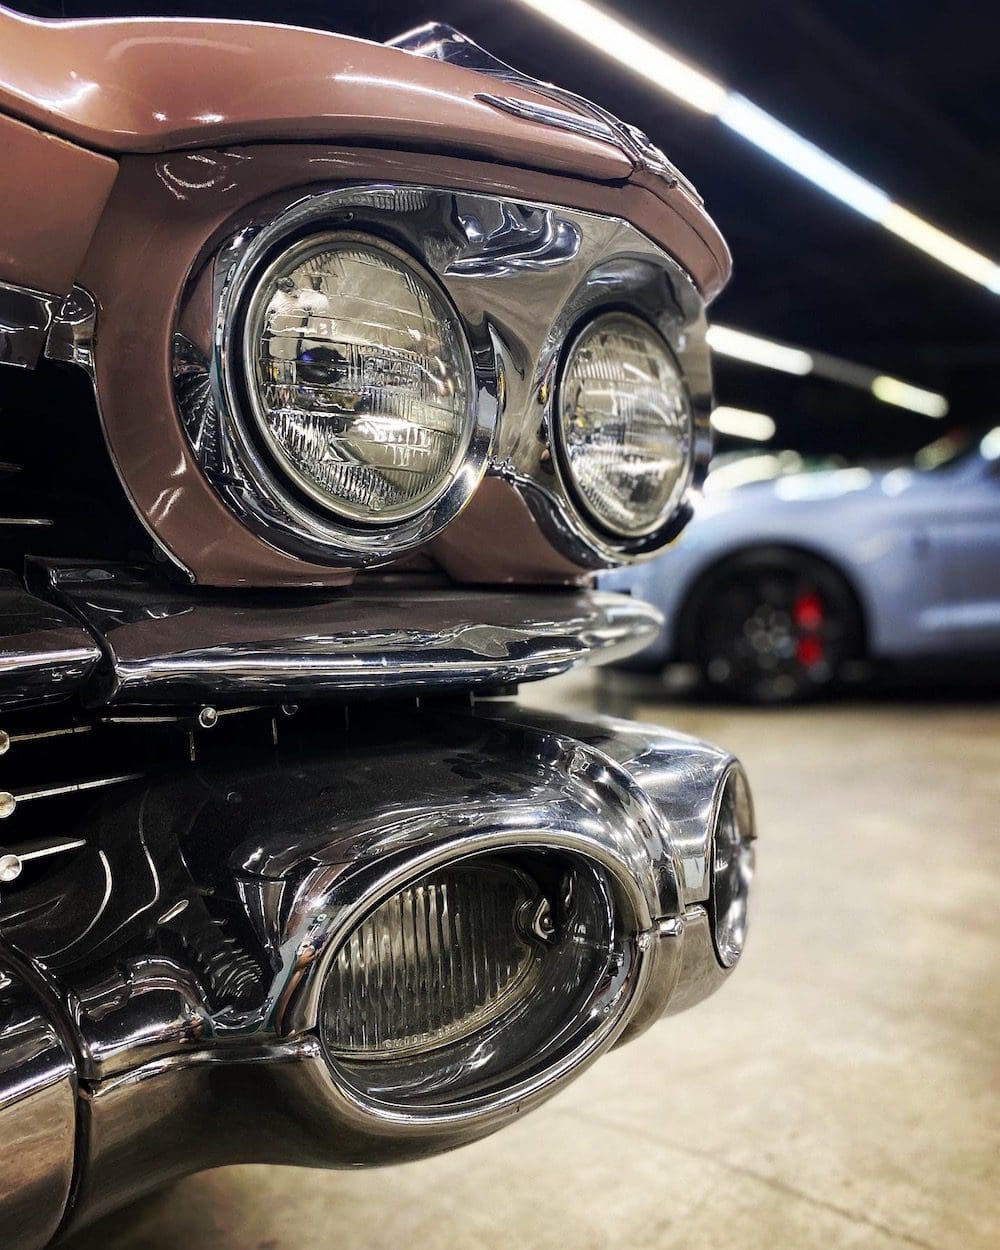 1959 Cadillac Coupe De Ville | Miles Through Time